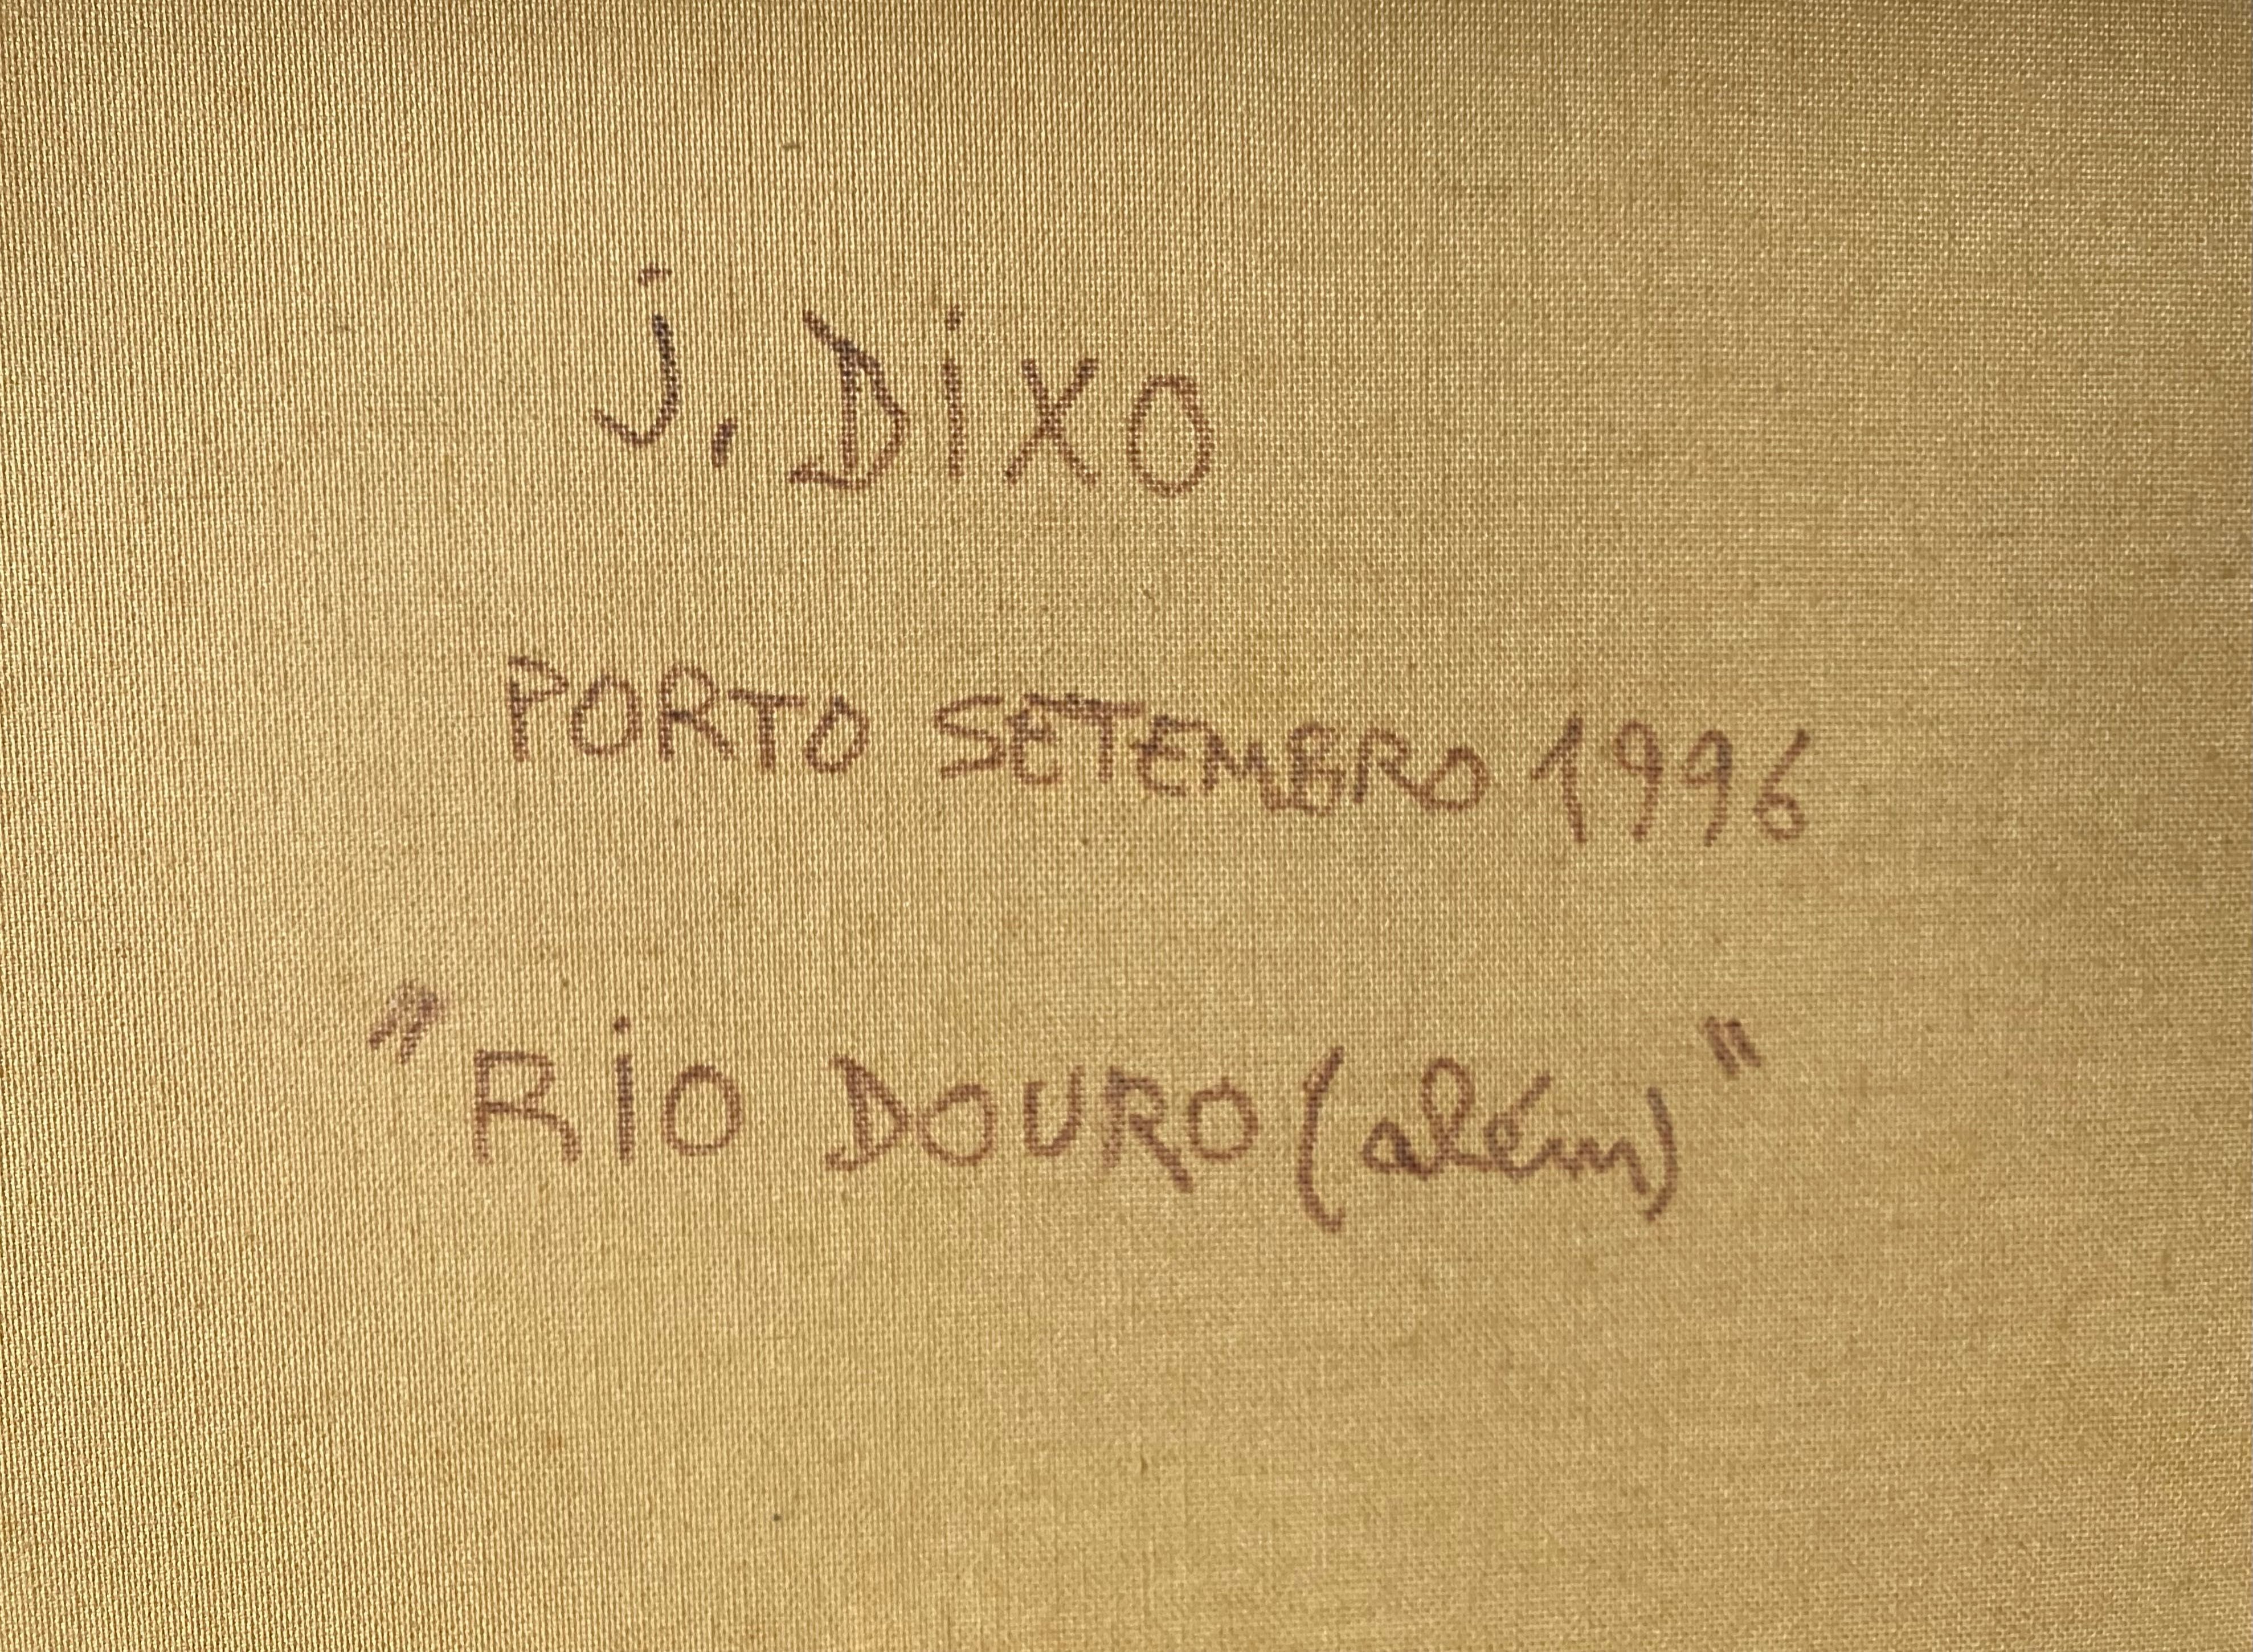 Quadro com pintura a óleo sobre tela de João Dixo